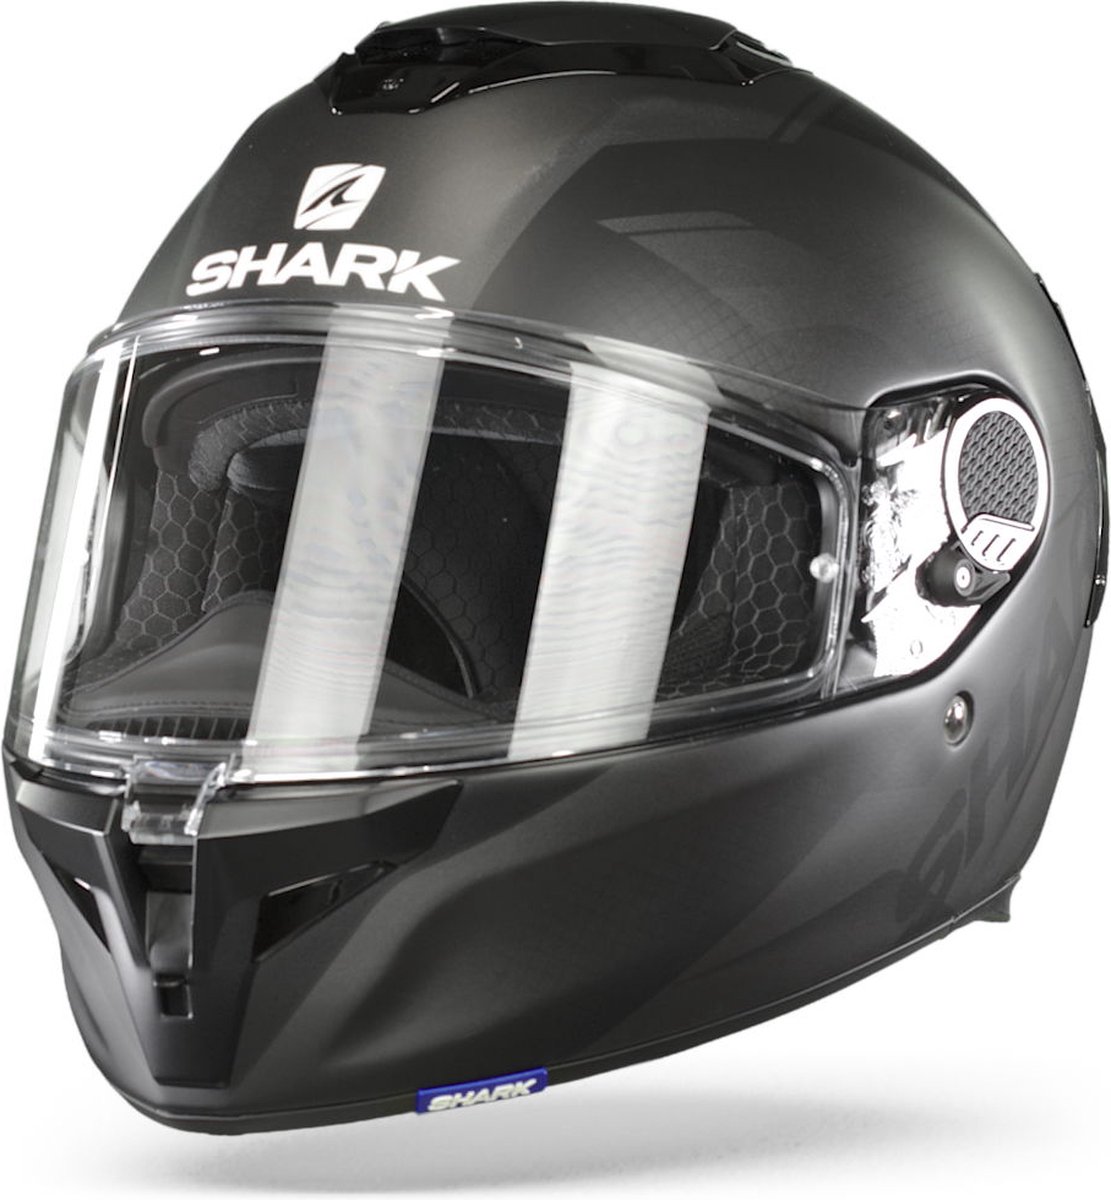 Shark Spartan Gt Blank Mat Bcl. Micr. Black Anthracite Anthracite Kaa 2XL - Maat 2XL - Helm